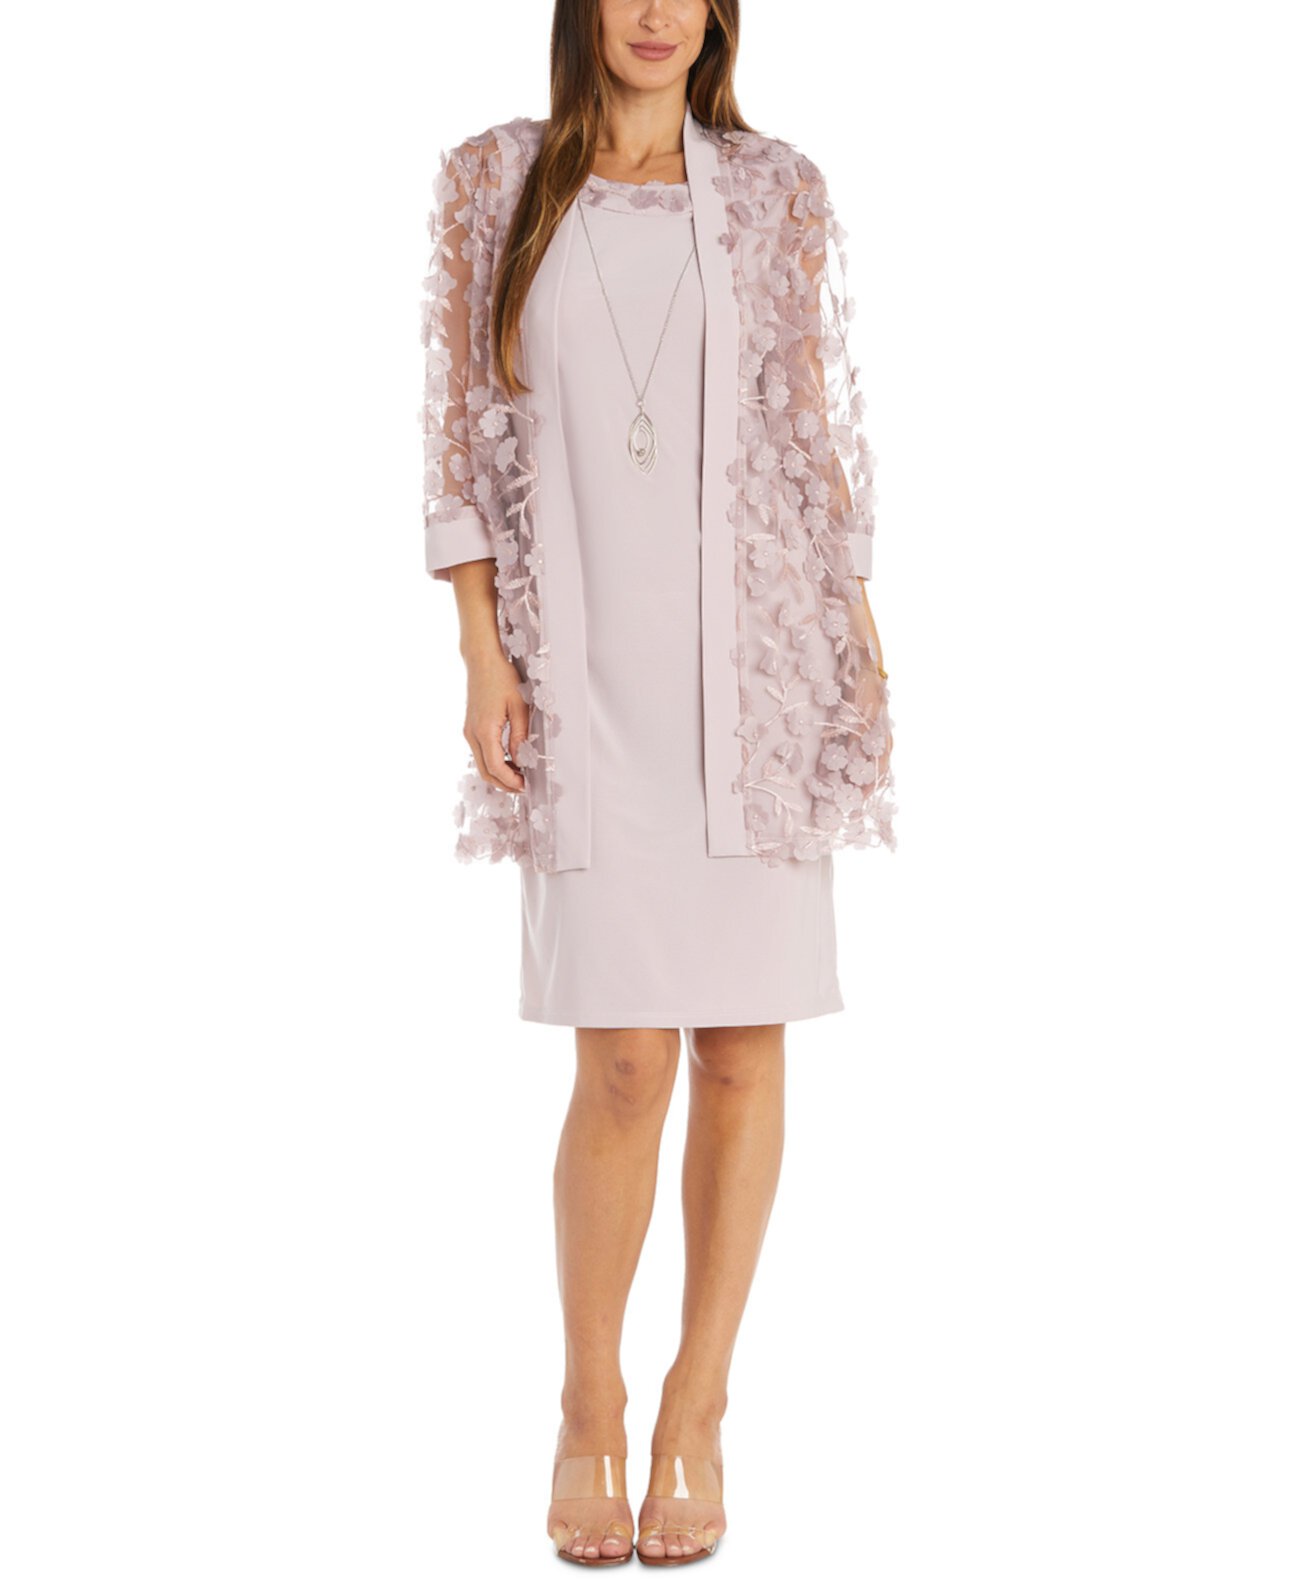 Женская прозрачная куртка с объемным цветочным орнаментом, платье-футляр без рукавов и комплект из ожерелья R & M Richards